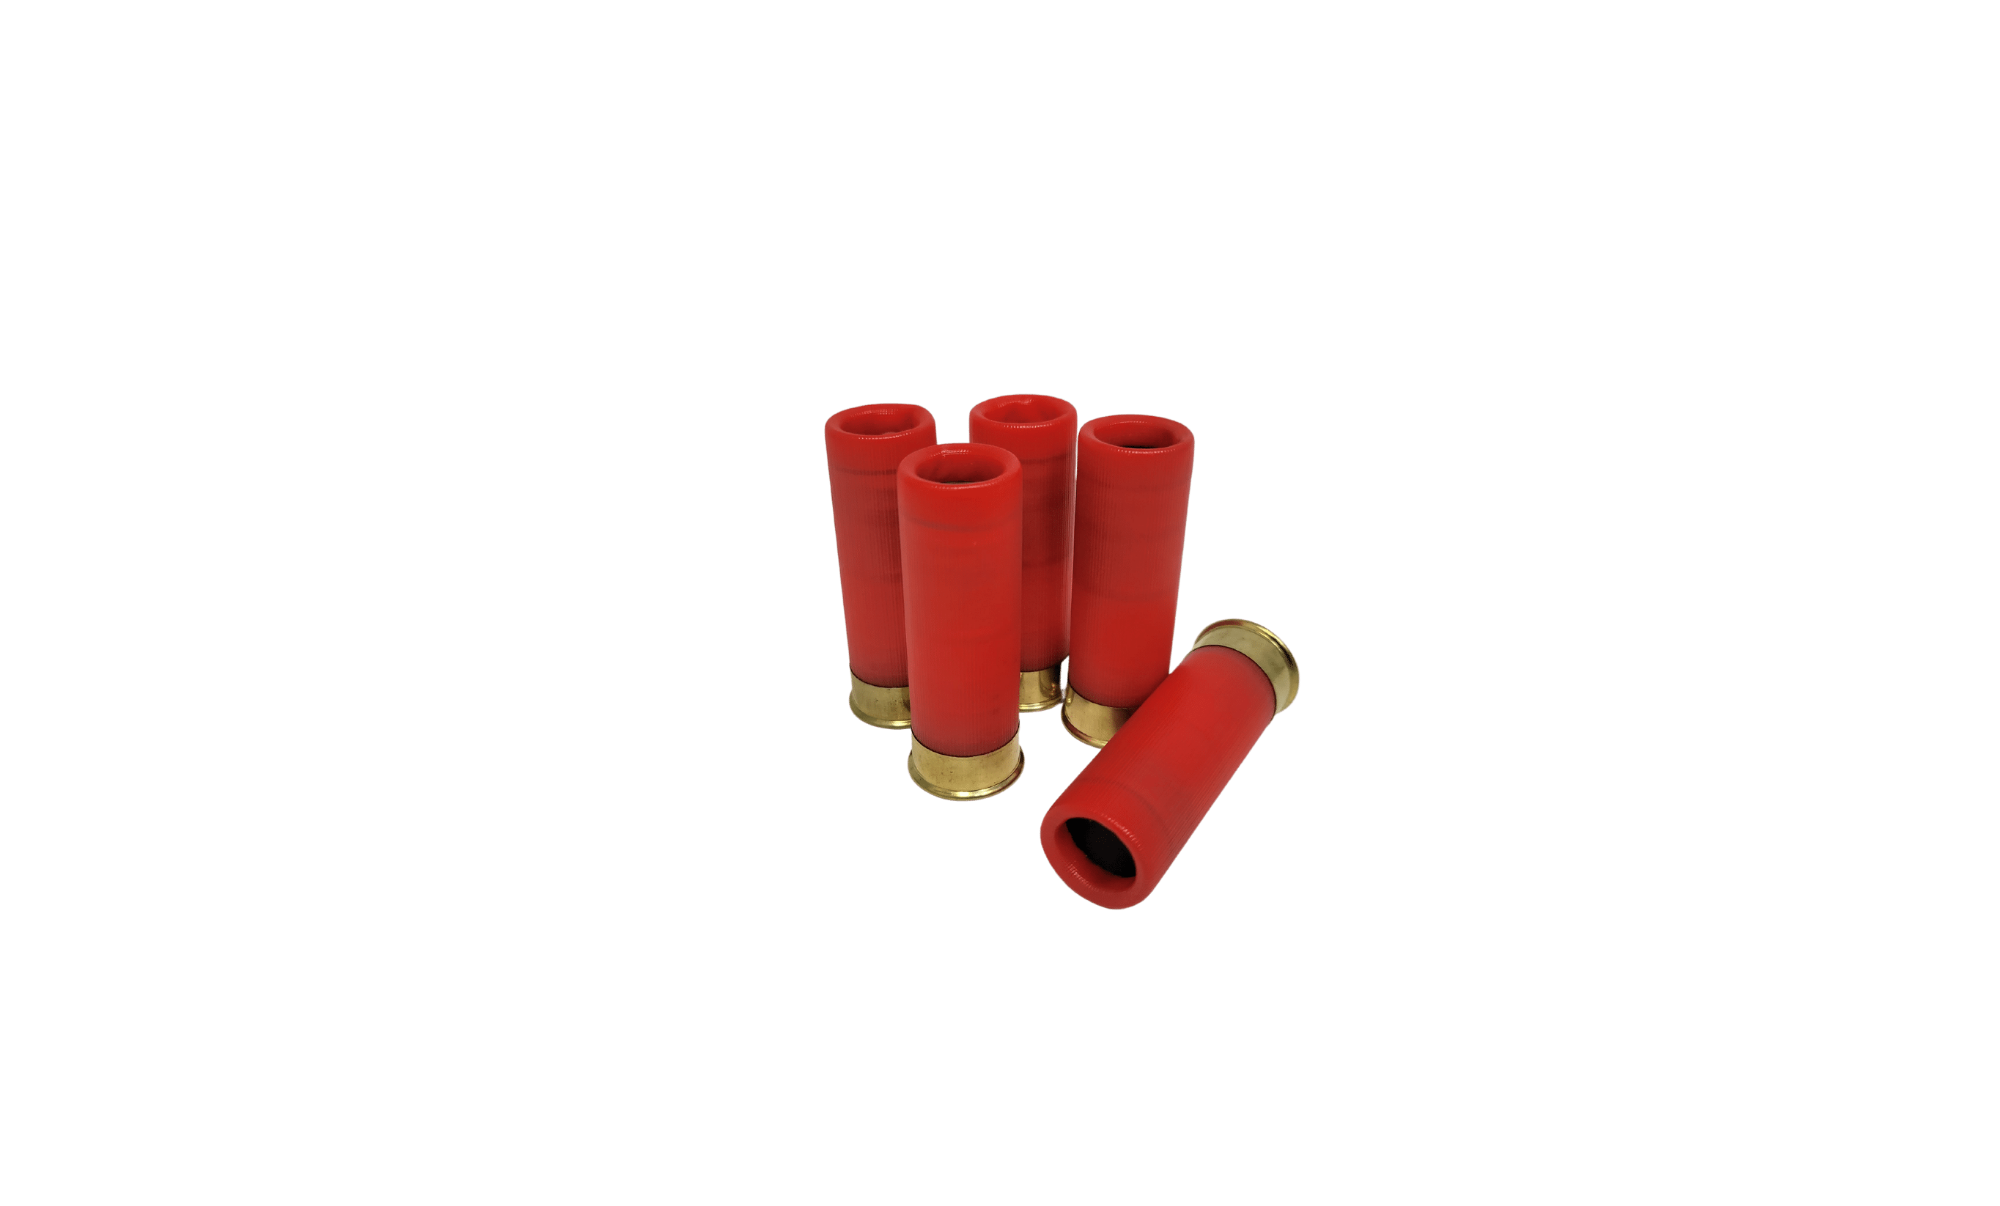 Nobel Sport Italia 16 Gauge Ammunition ANS168 2-3/4″ 1-1/16 oz 8 Shot 25 Rounds (Box) Product Image